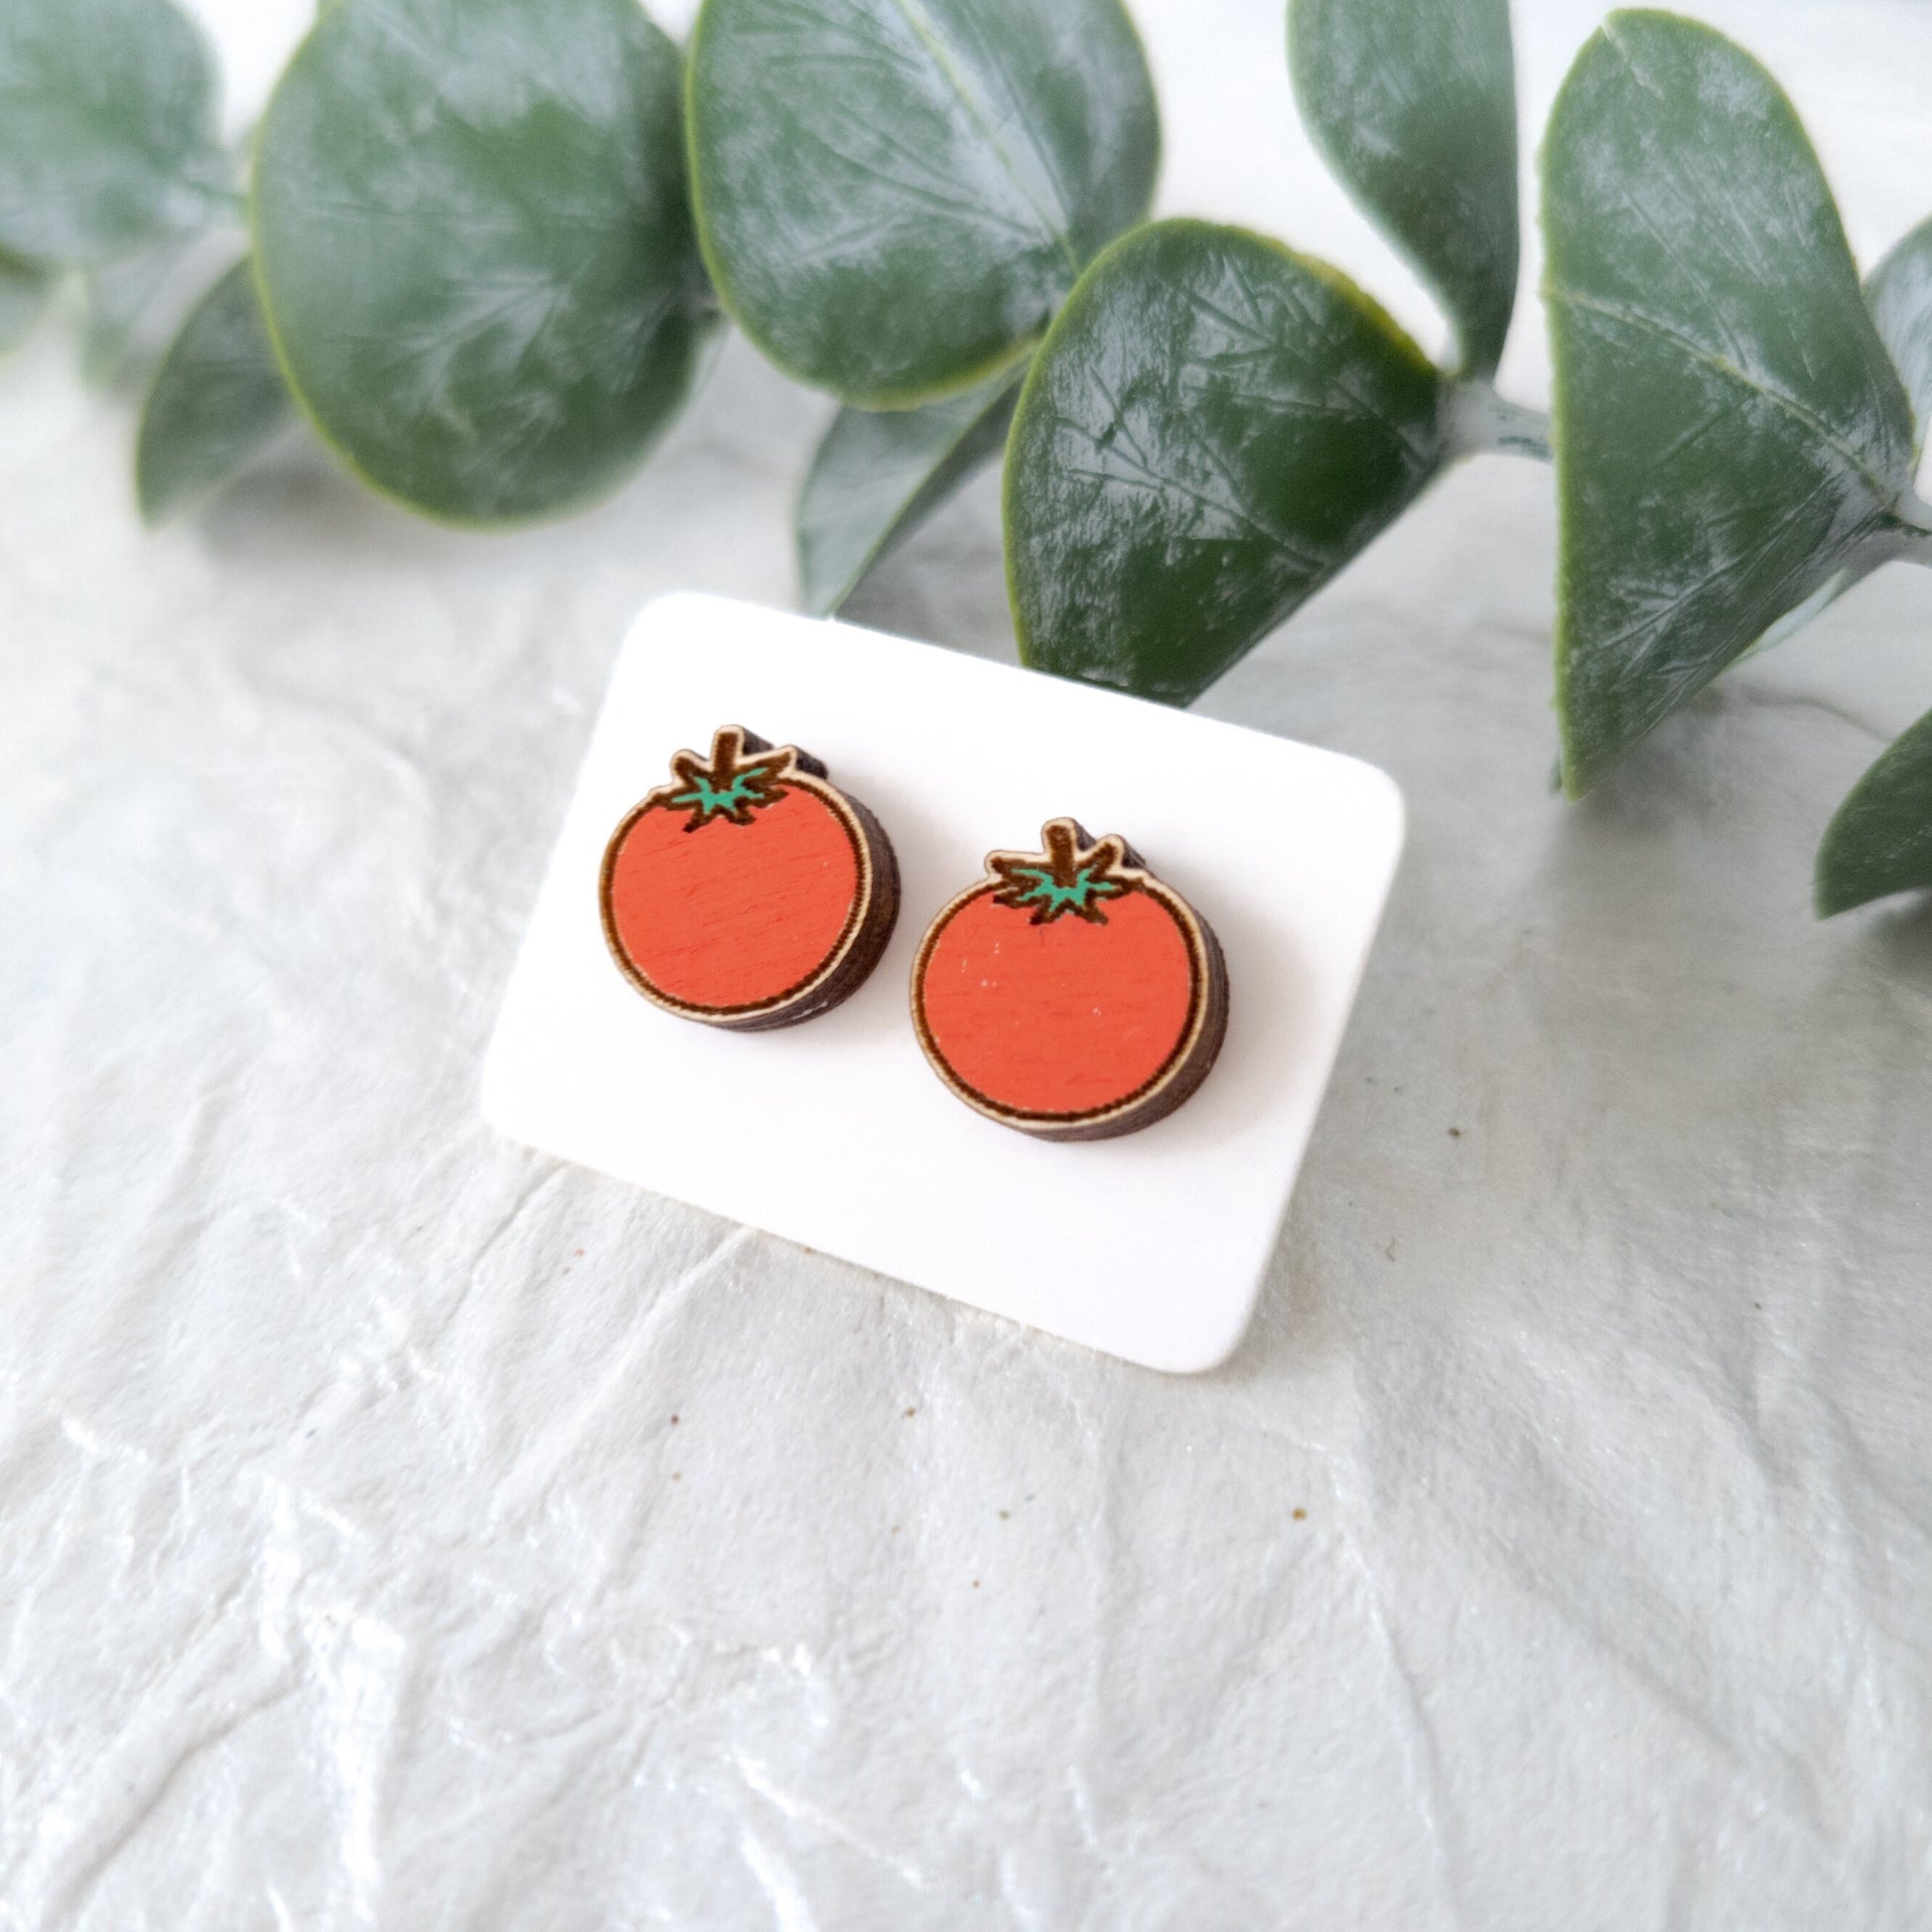 Wooden Tomato Stud Earrings - Wooden Food Funny Earrings - Fruit Earrings - Silly Earrings - Fruit and Vegetable Earrings